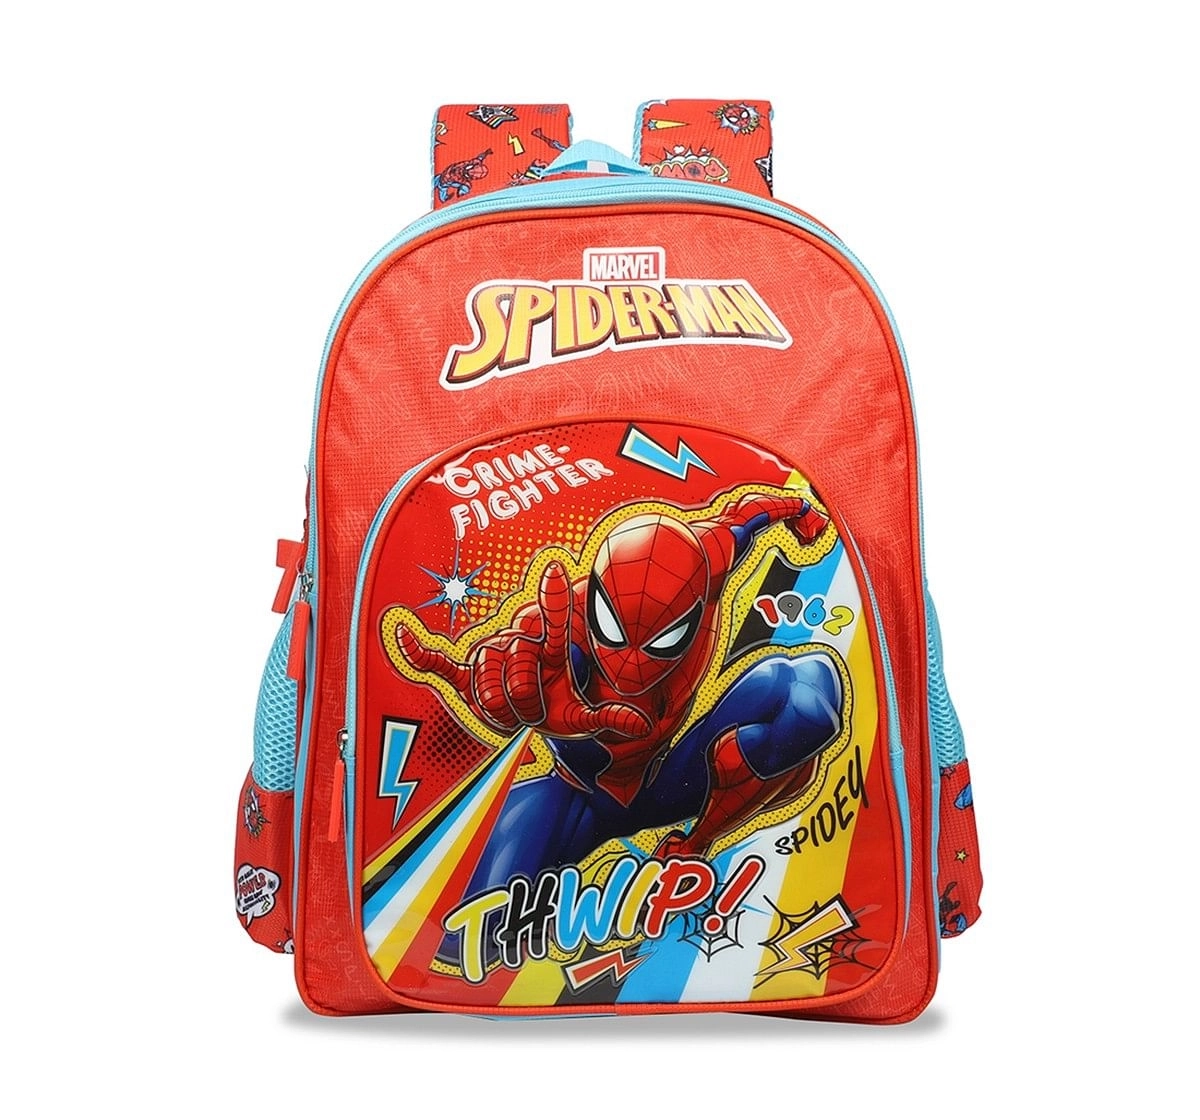 Marvel Spiderman Crime Fighter School Bag 36 Cm  for age 3Y+ 